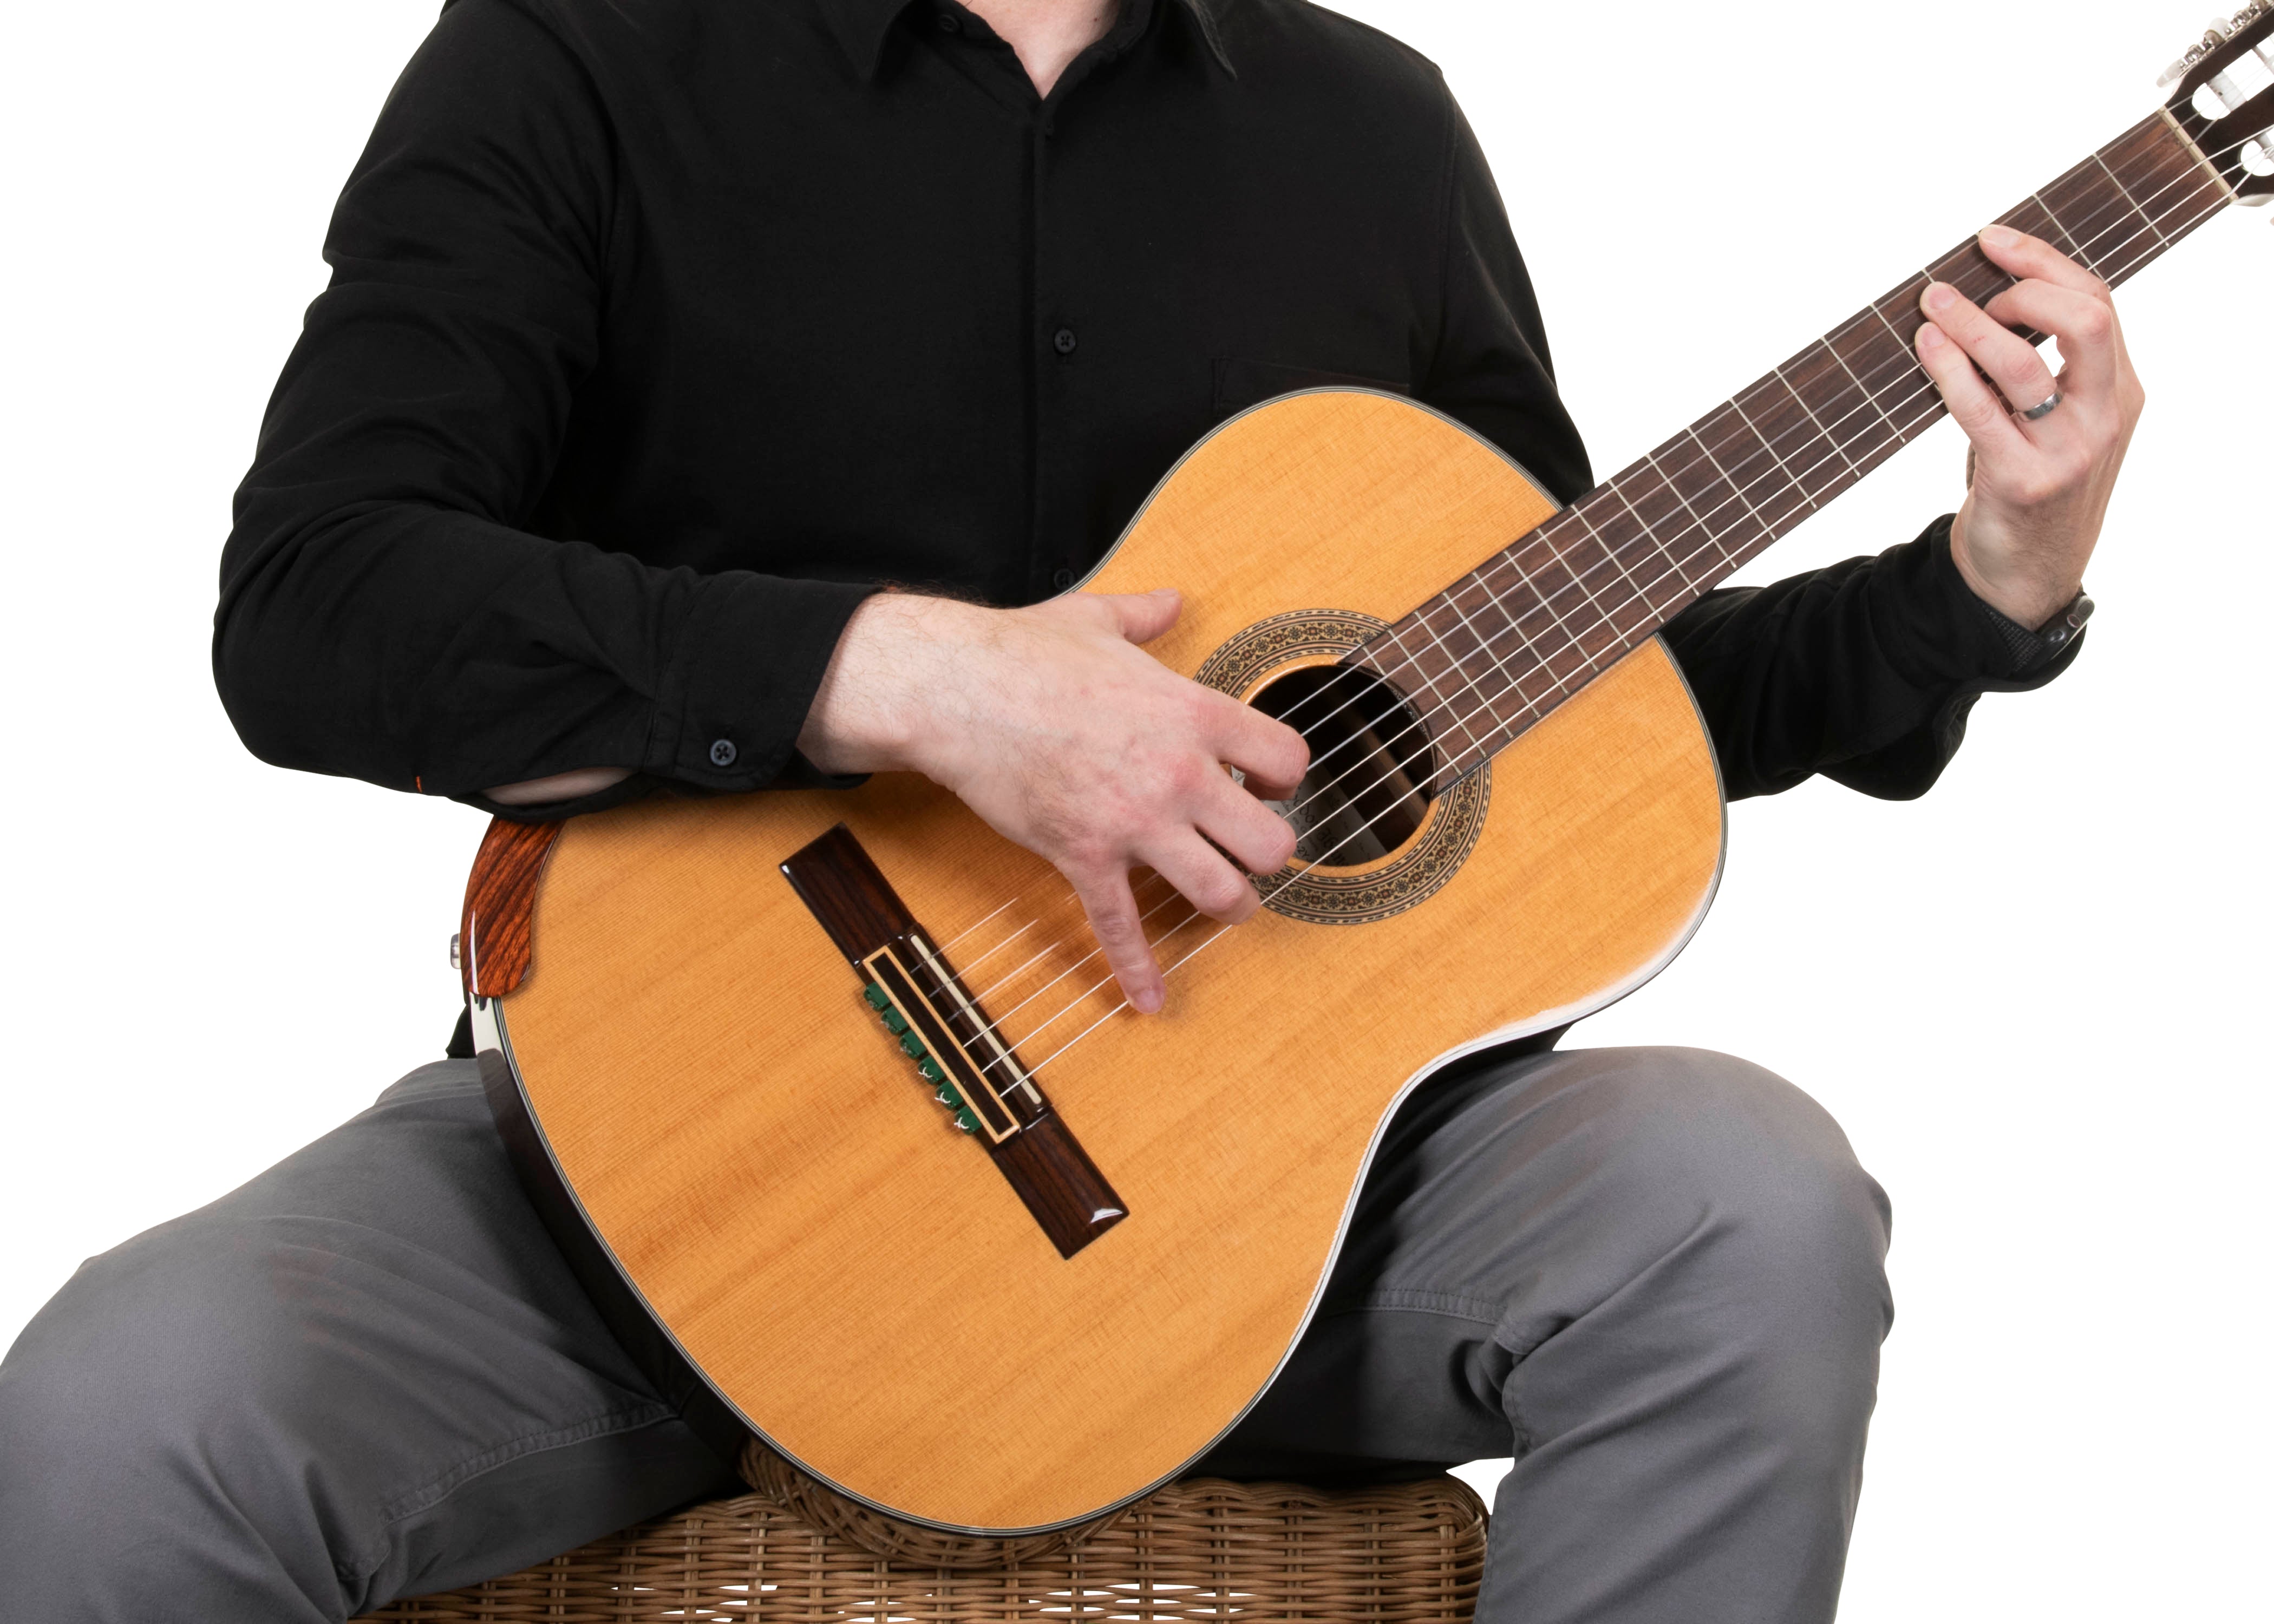 Apoio de braço para guitarra clássica, Acústico marrom claro, Descanso de braço para guitarra flamenca Apoio de braço Alba Guitar ArmRest